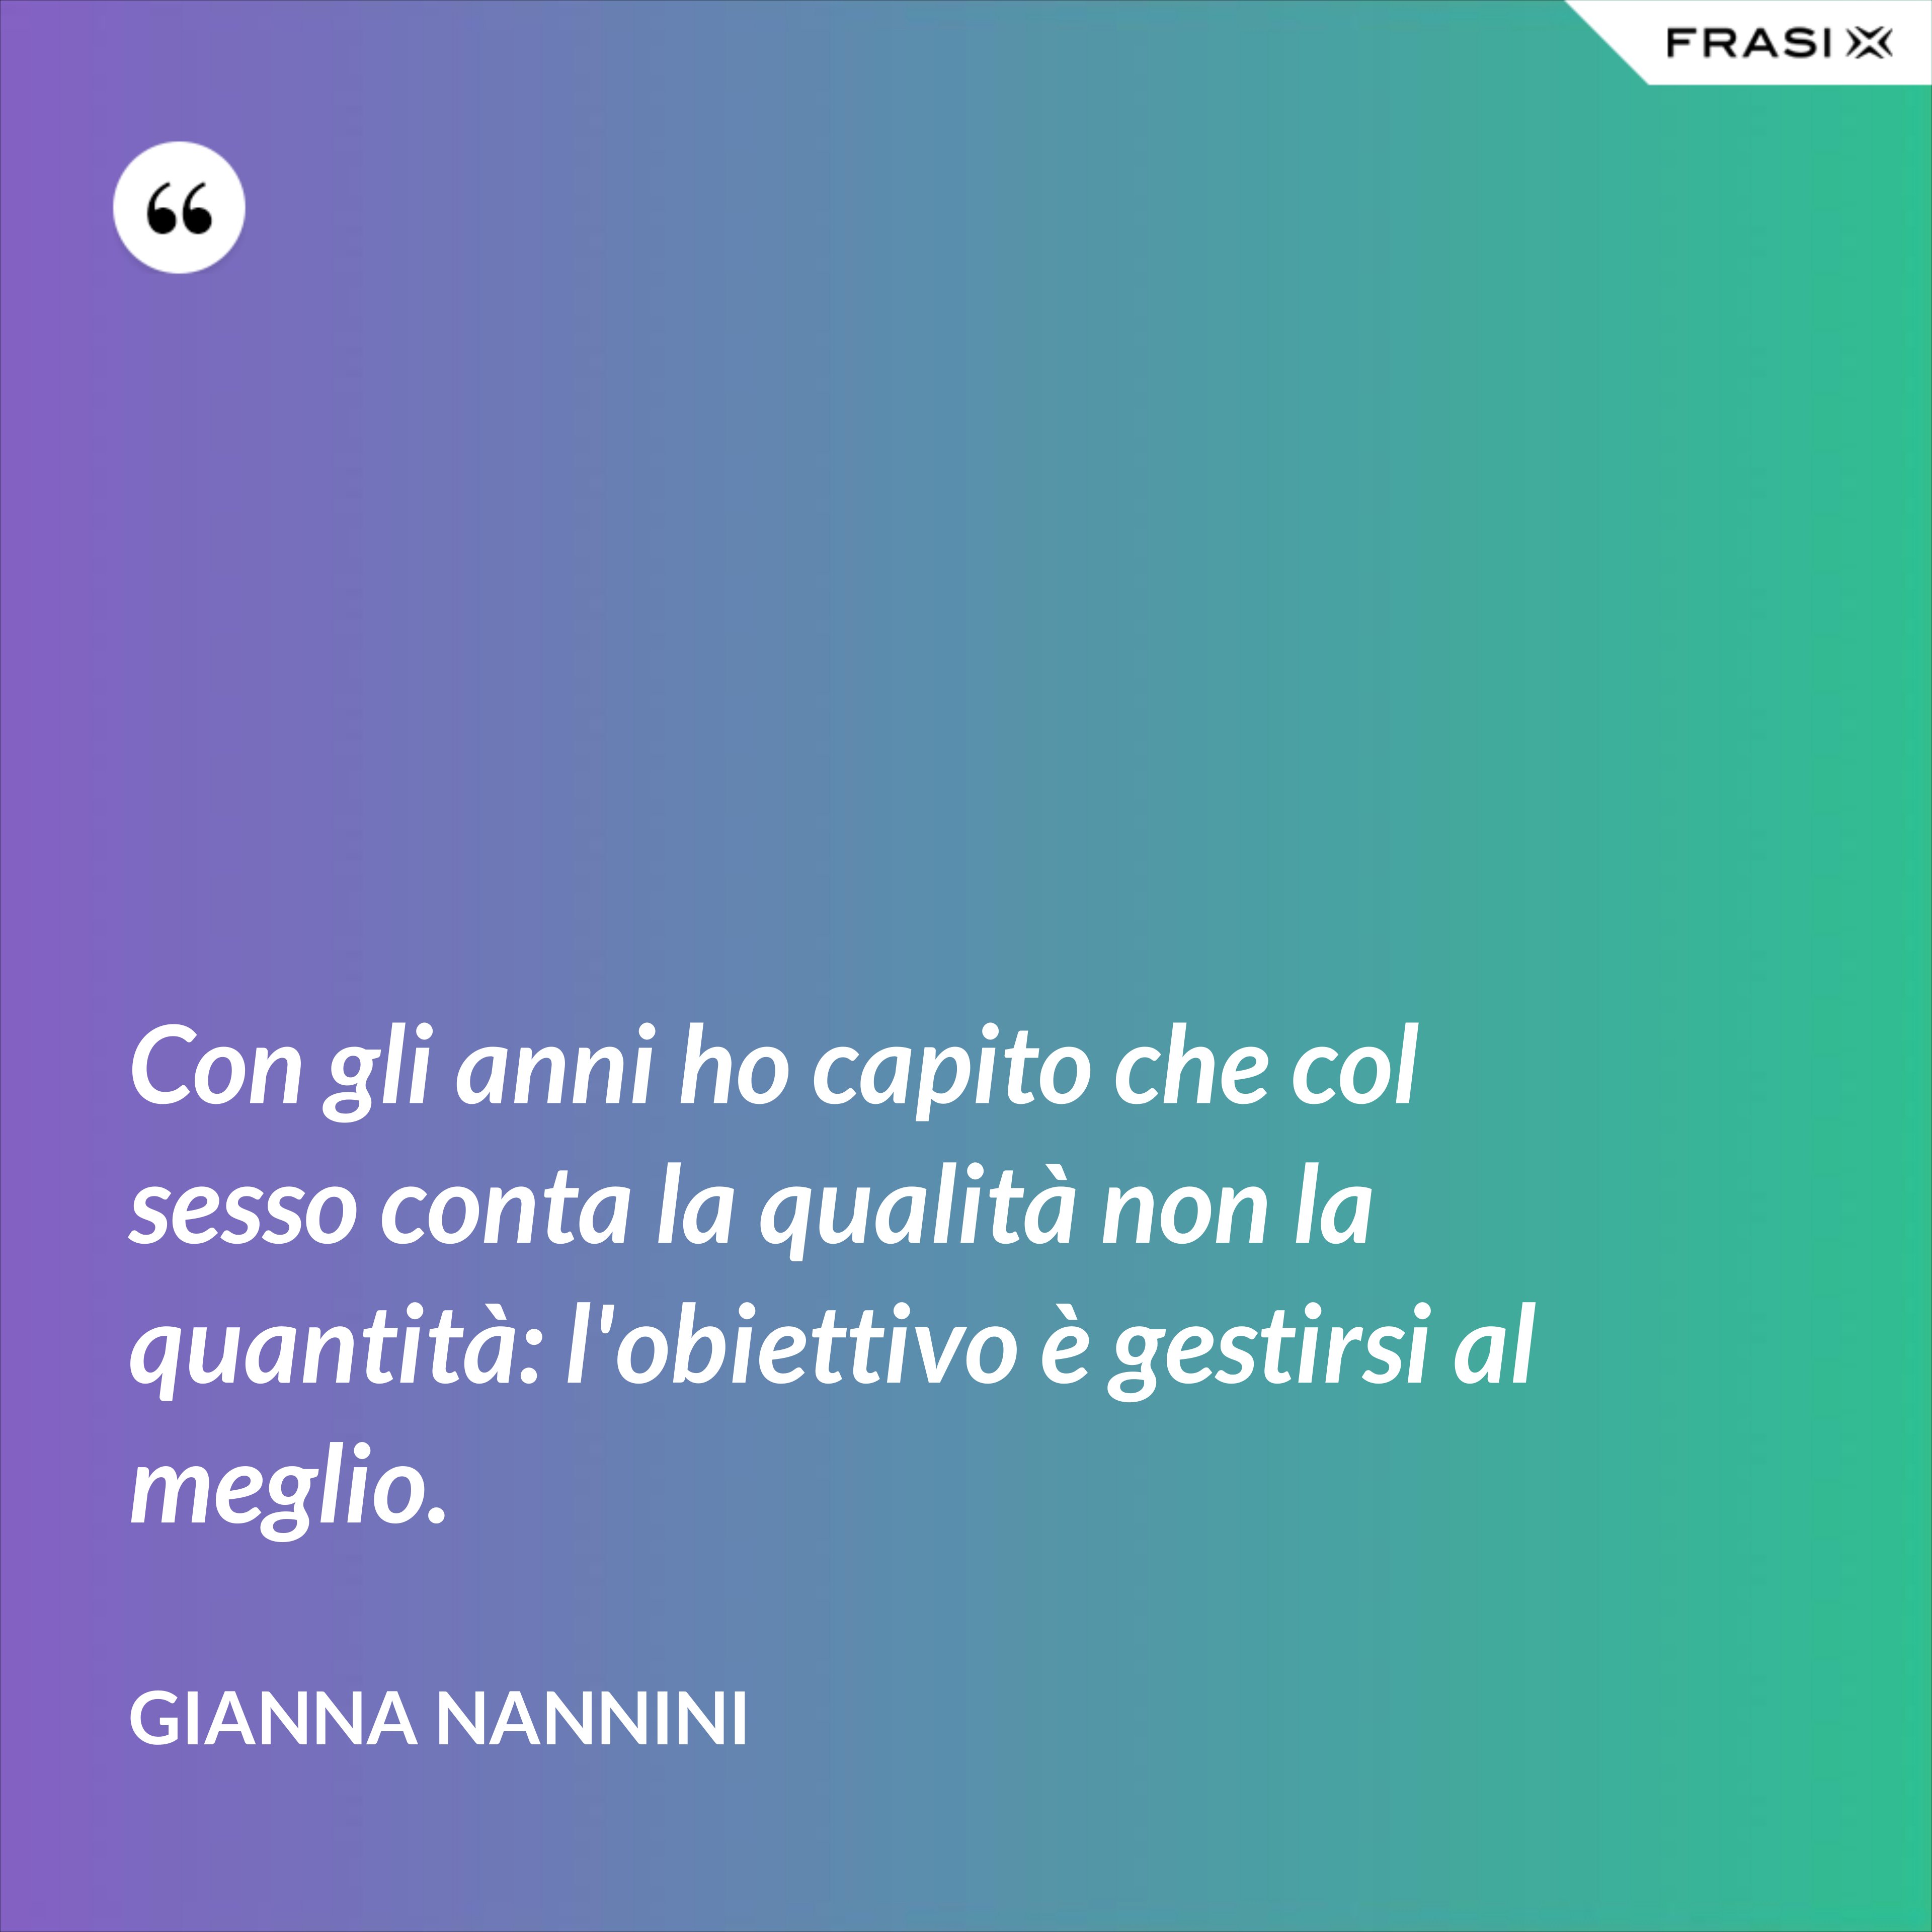 Con gli anni ho capito che col sesso conta la qualità non la quantità: l'obiettivo è gestirsi al meglio. - Gianna Nannini